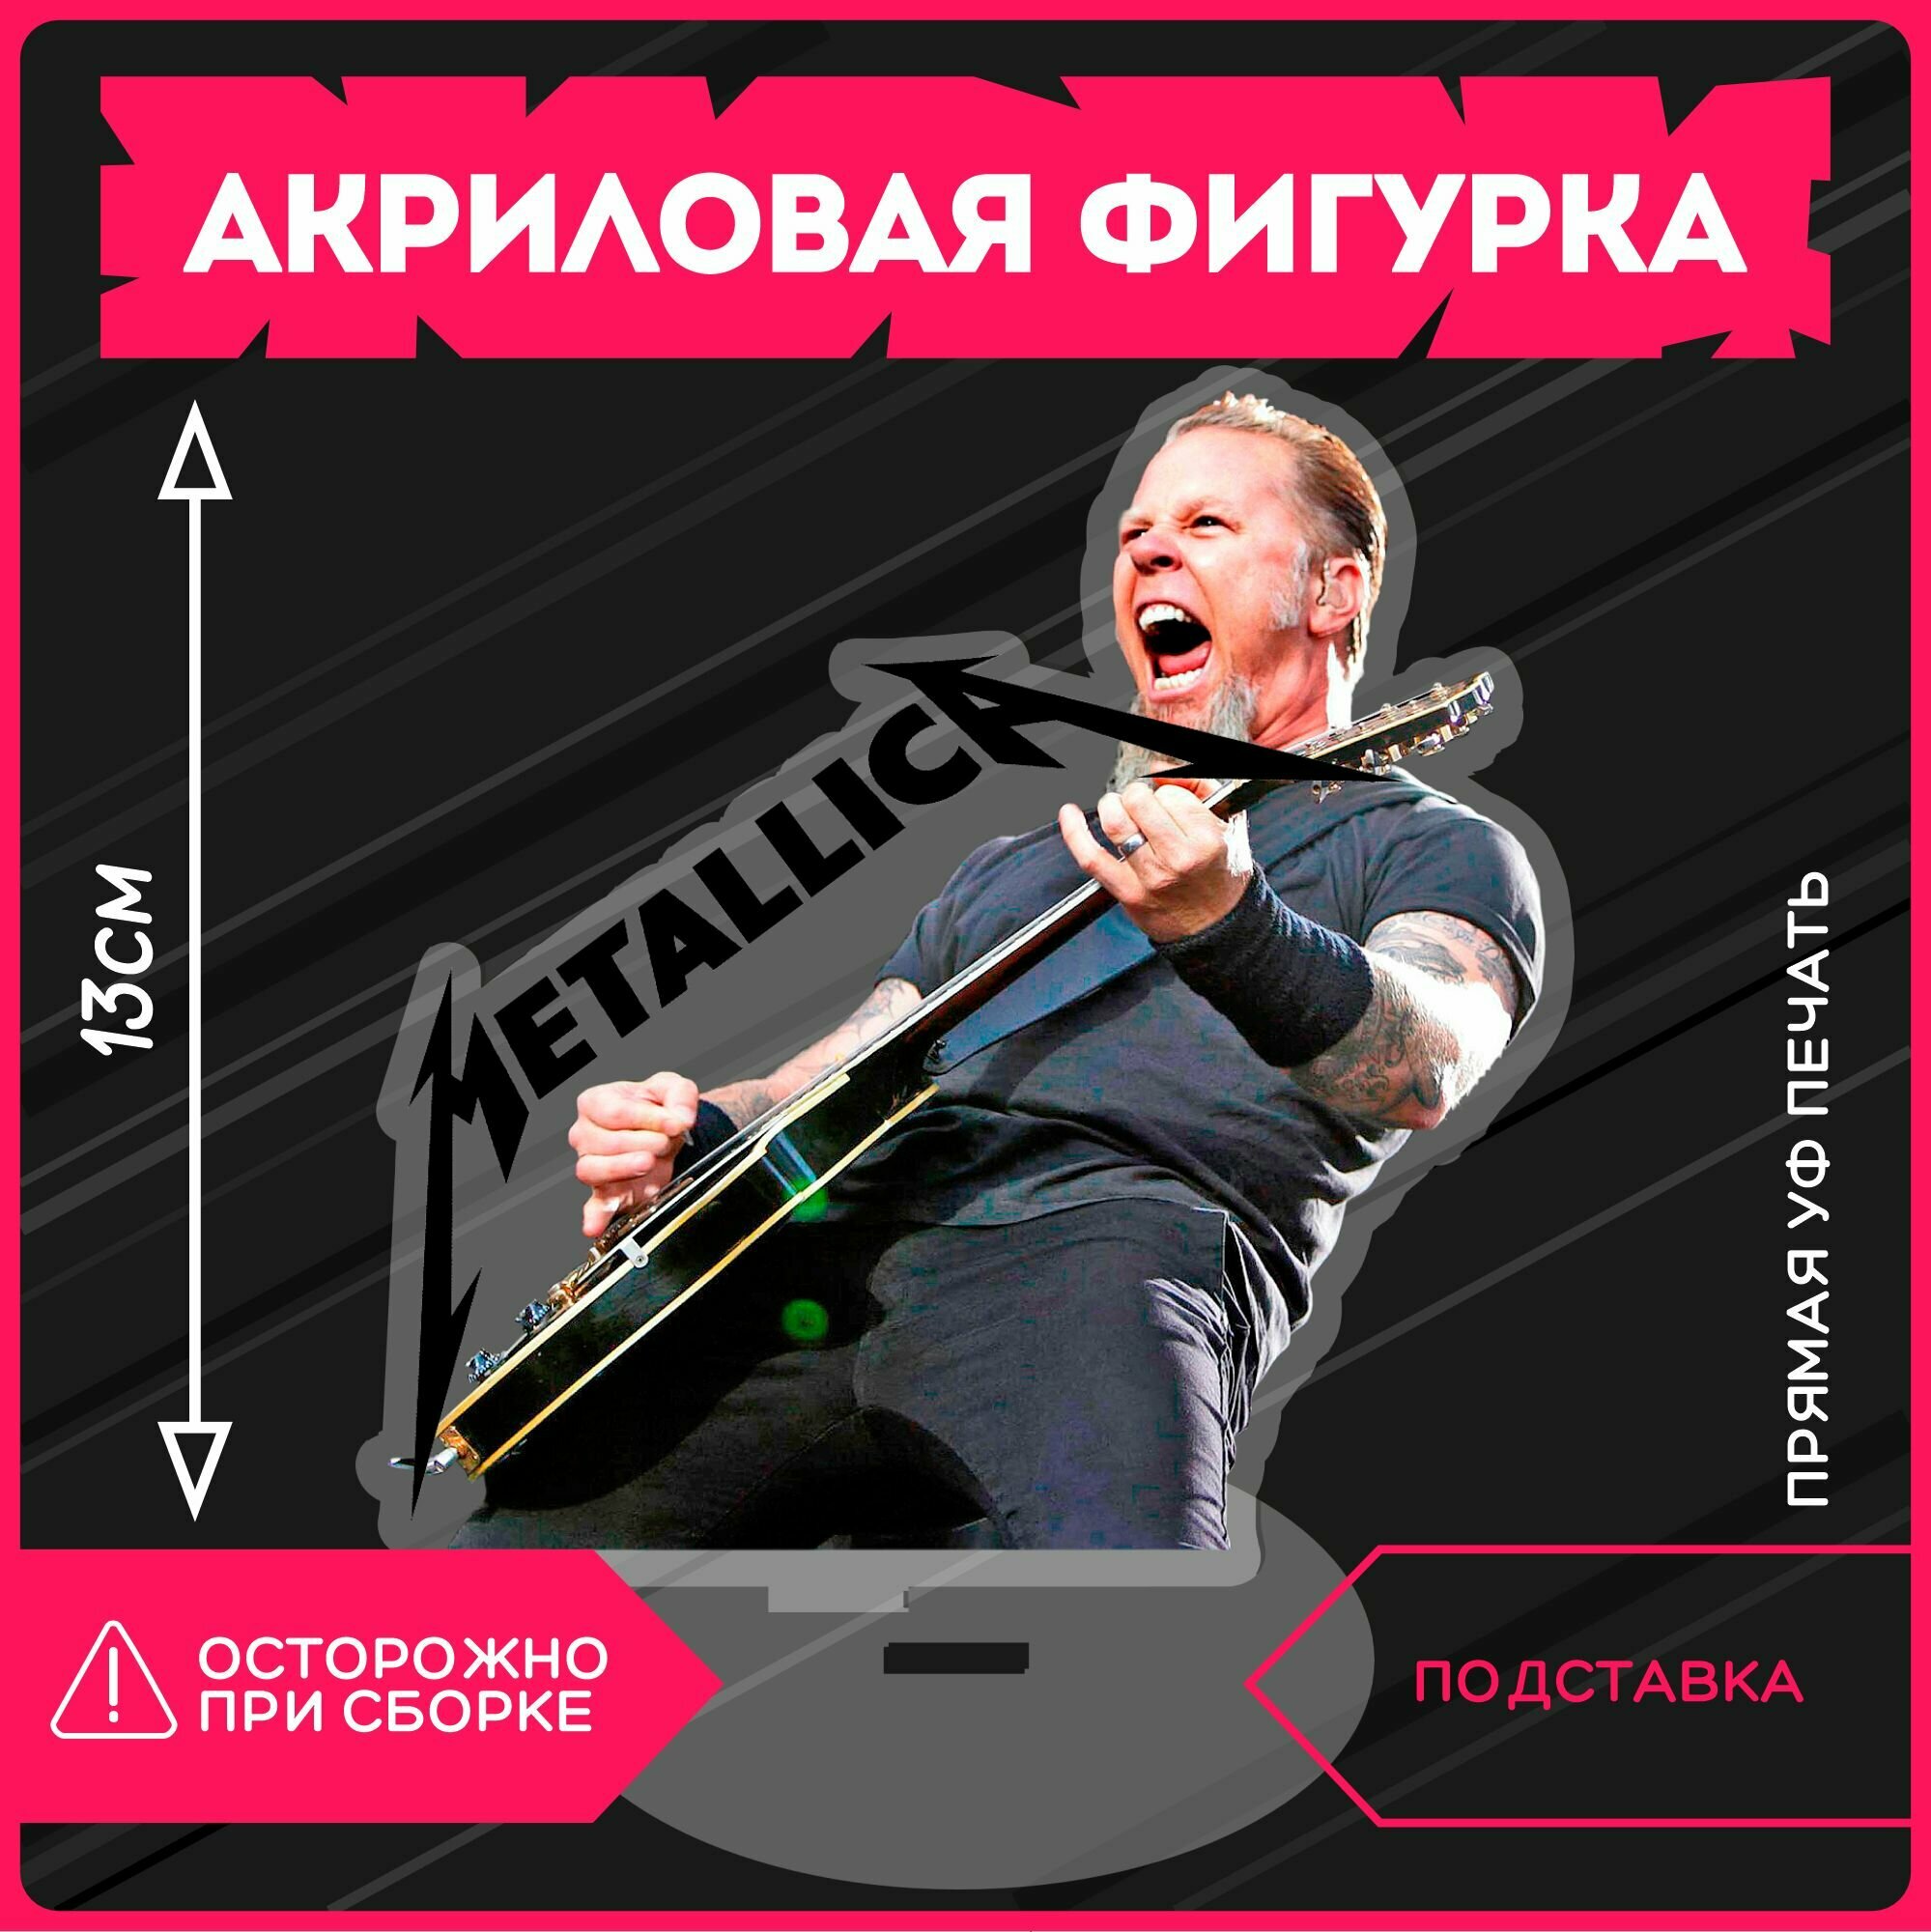 Фигурка акриловая музыка Metallica